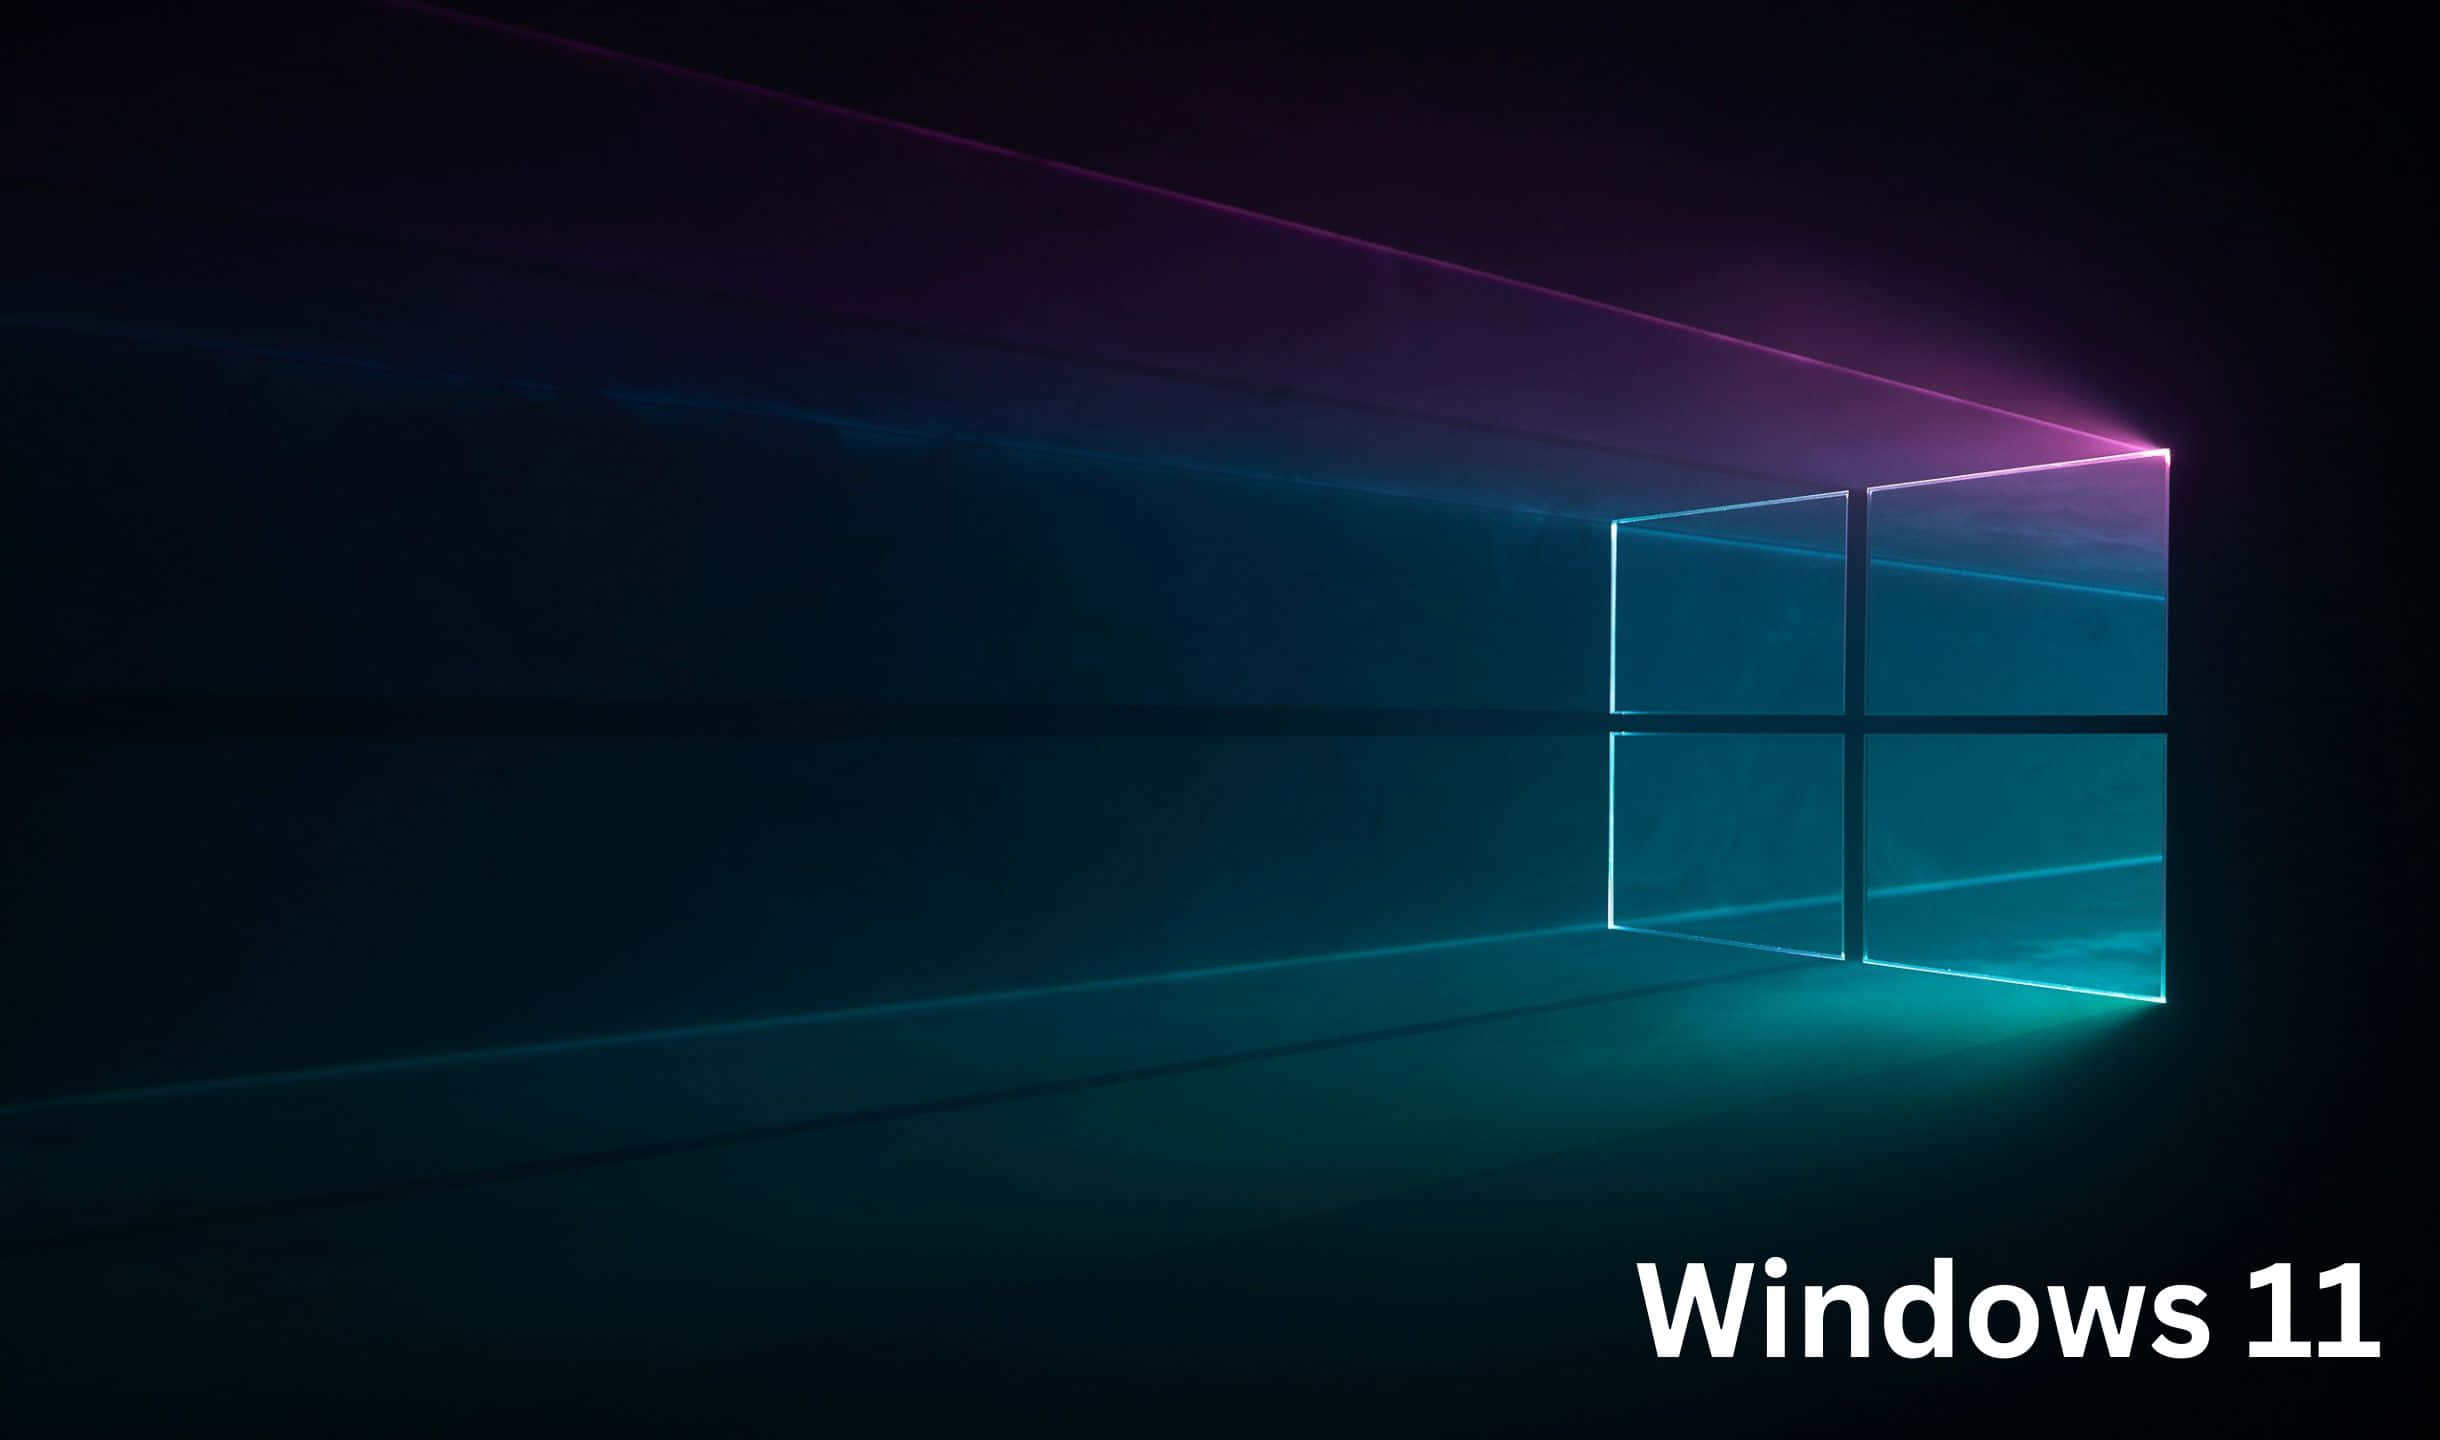 Upplevkraften Av Windows 11 Med Dess Senaste Funktioner.